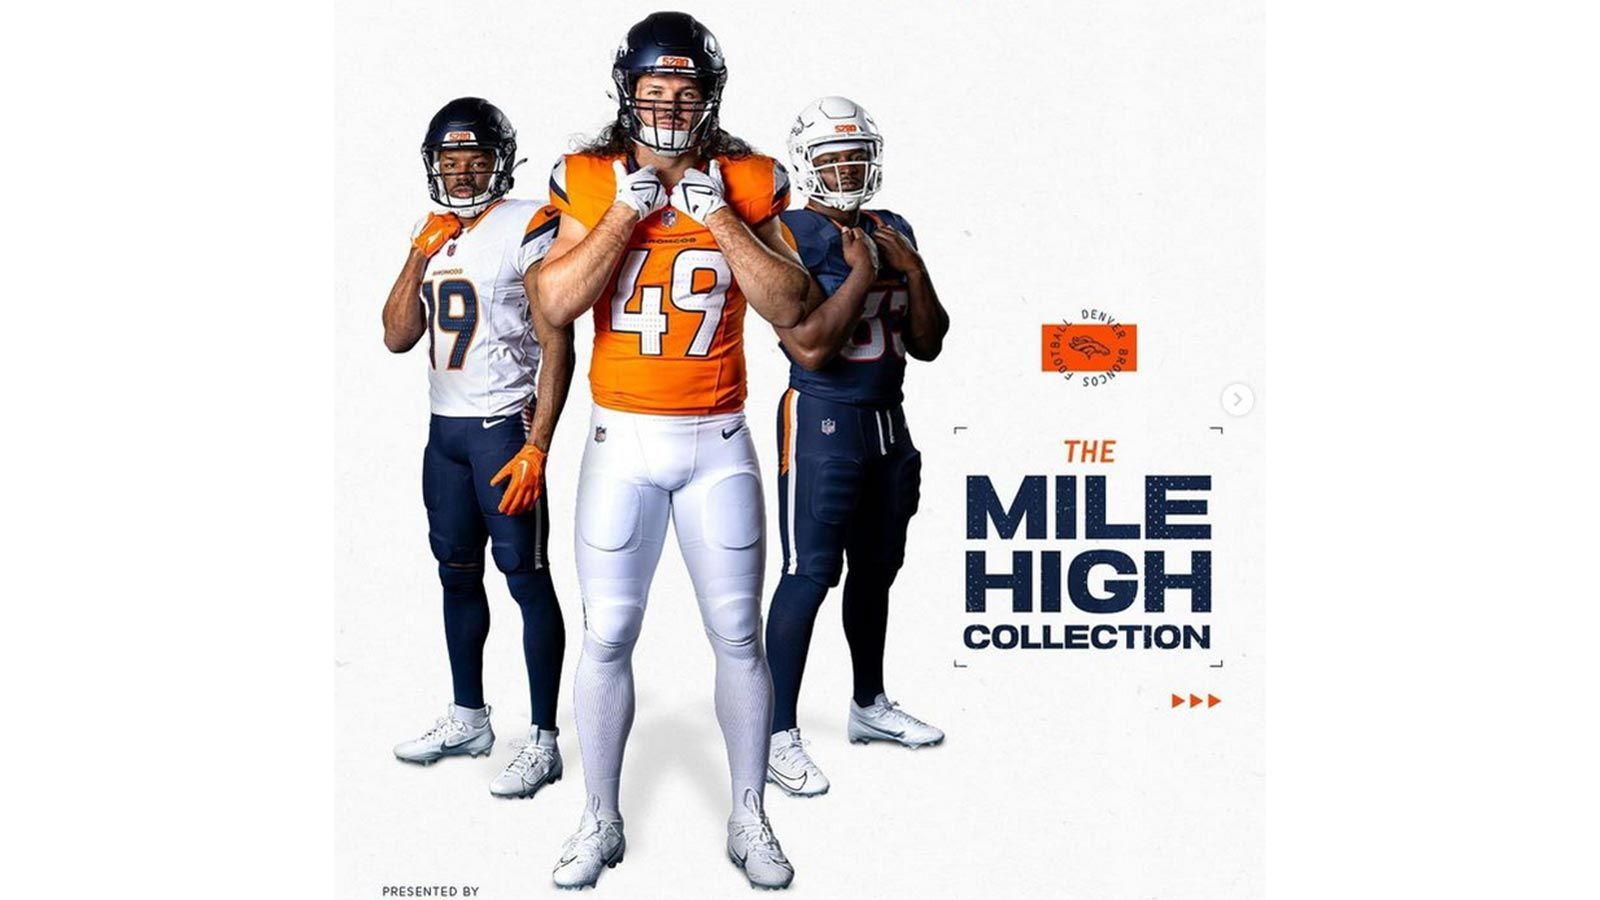 <strong>Denver Broncos</strong><br>
                Team-Farben: Navy-Blau, Orange und Weiß<br>Die <a target="_blank" href="https://www.ran.de/sports/american-football/nfl/news/broncos-trikot-nfl-super-bowl-football-denver-362287">drei neuen Trikots</a> sind jeweils mehrheitlich in einer traditionellen Farbe gehalten. Das erste Shirt ist orange und enthält nur im Schulterbereich weiß-blaue Muster. Das zweite Trikot ist weiß, das dritte ist fast komplett in Dunkelblau gehalten.